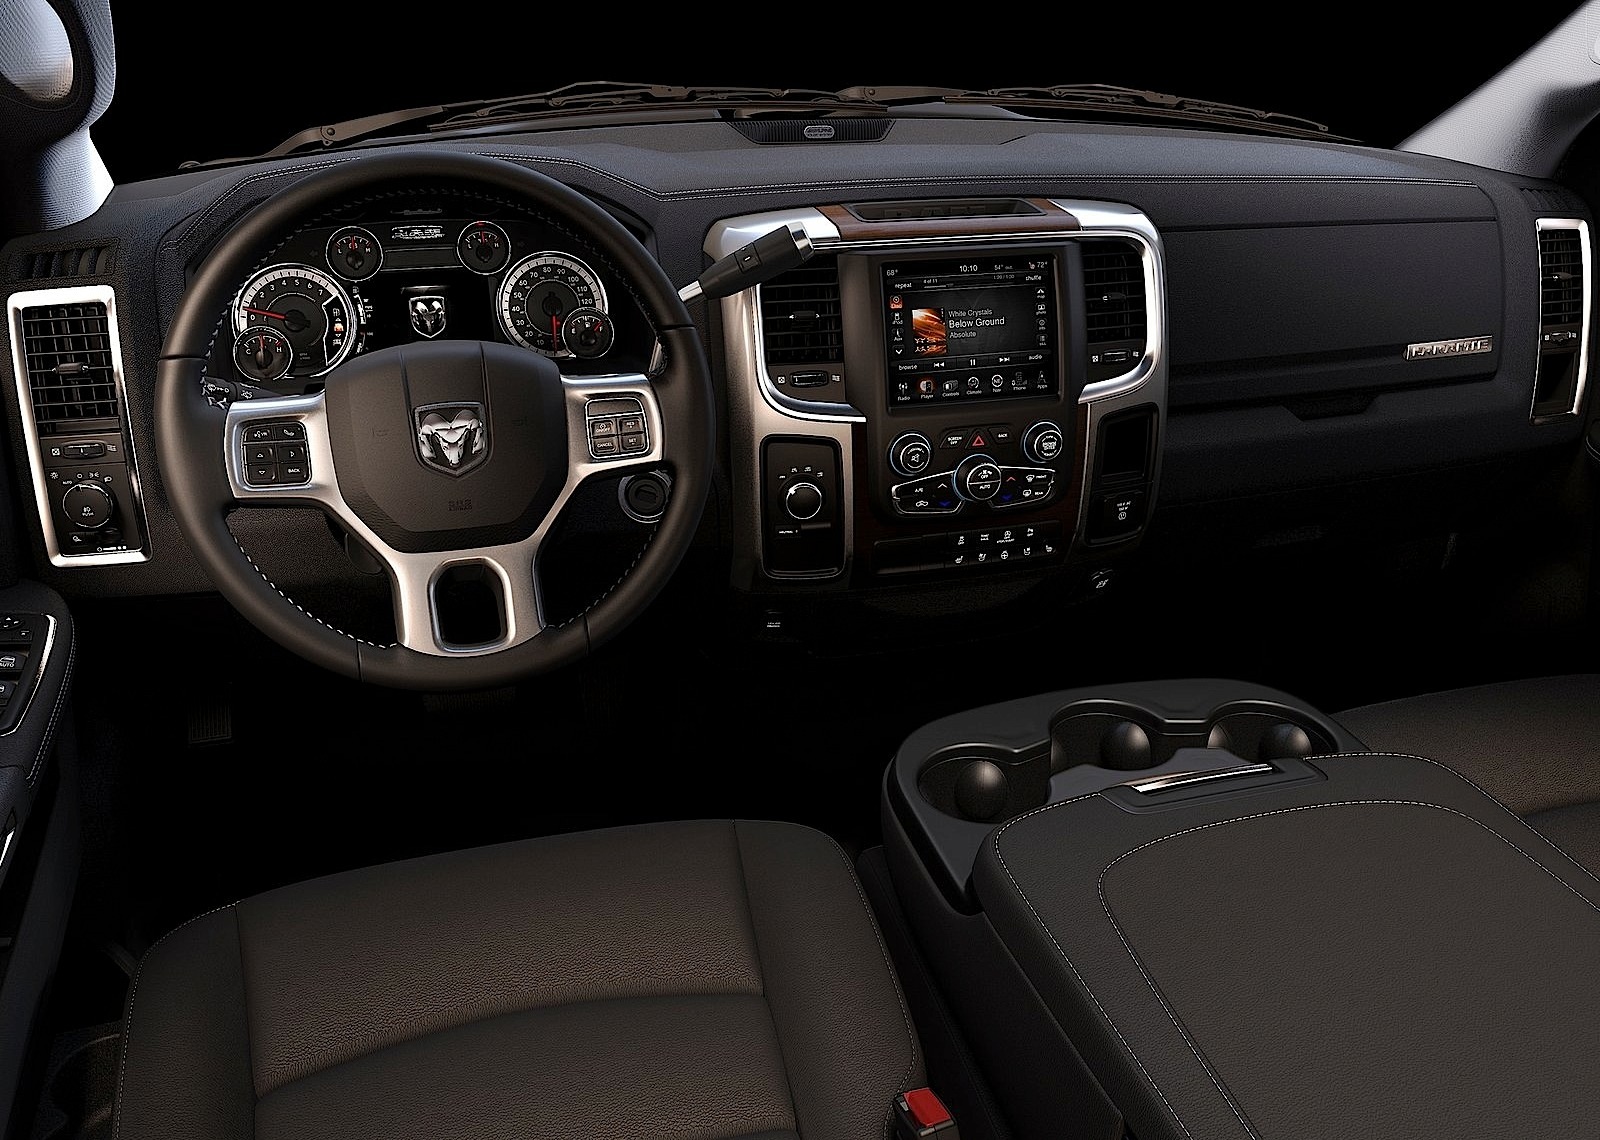 2018 Dodge Ram 2500 Mega Cab Interior Interior Design And